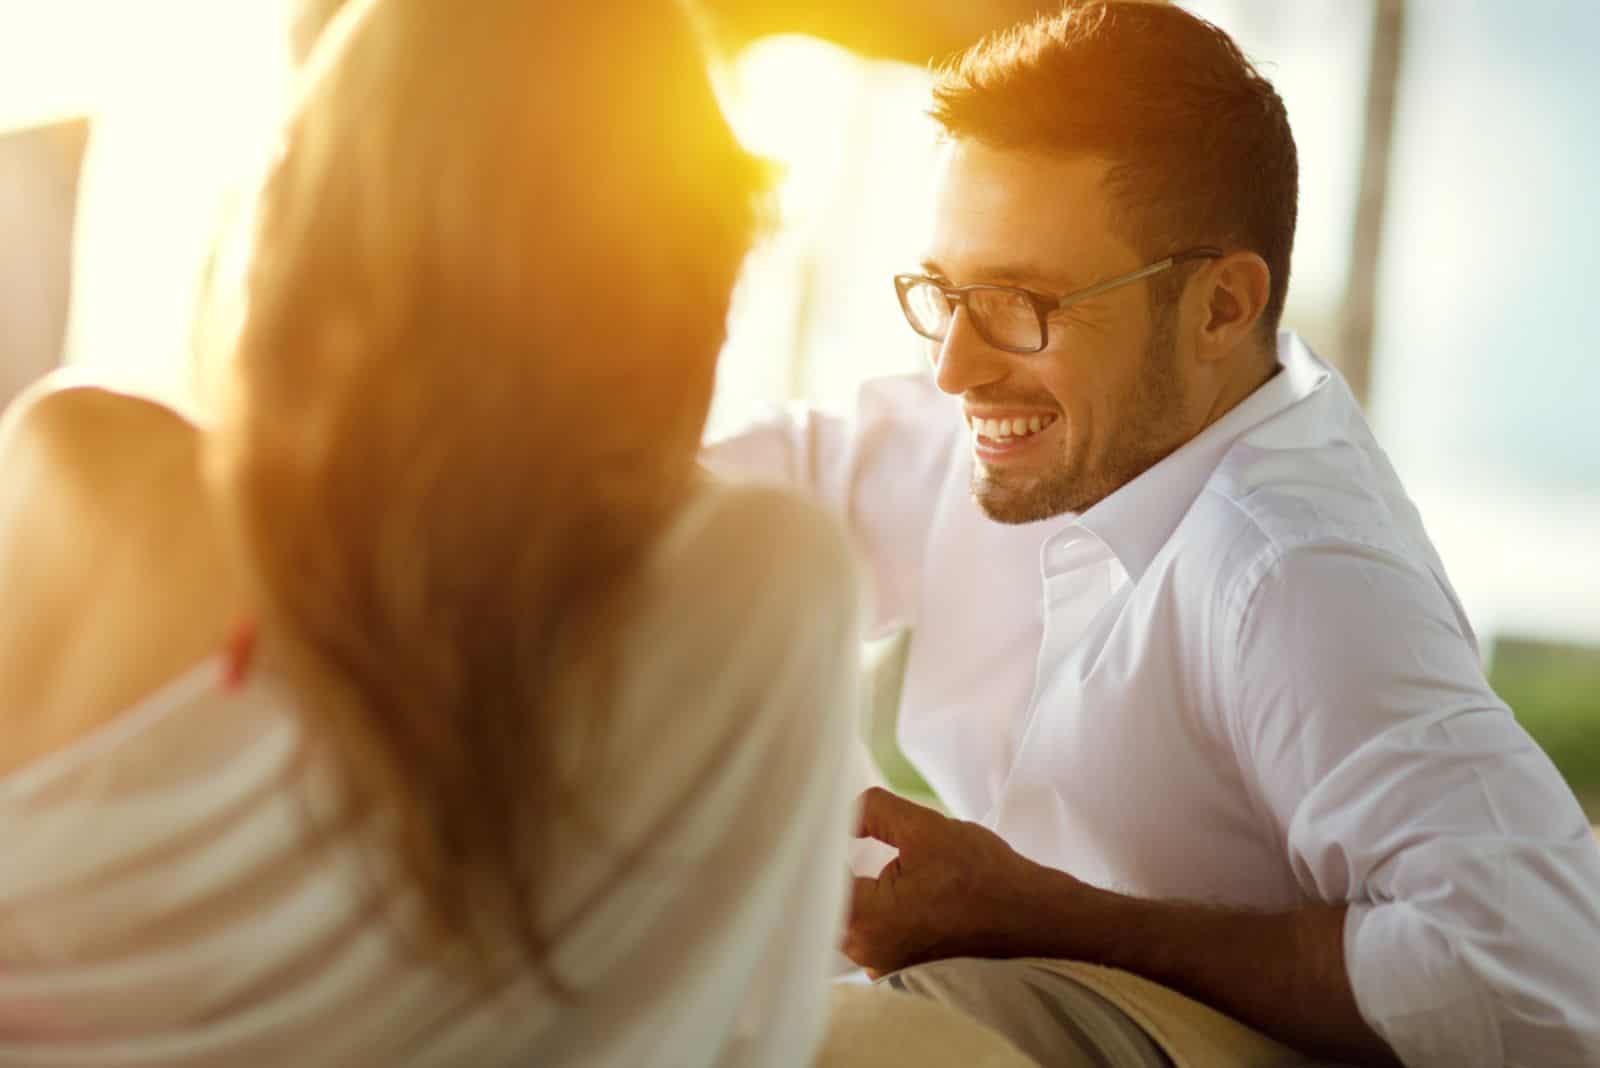 un homme souriant avec des lunettes est assis à côté d'une femme et ils parlent